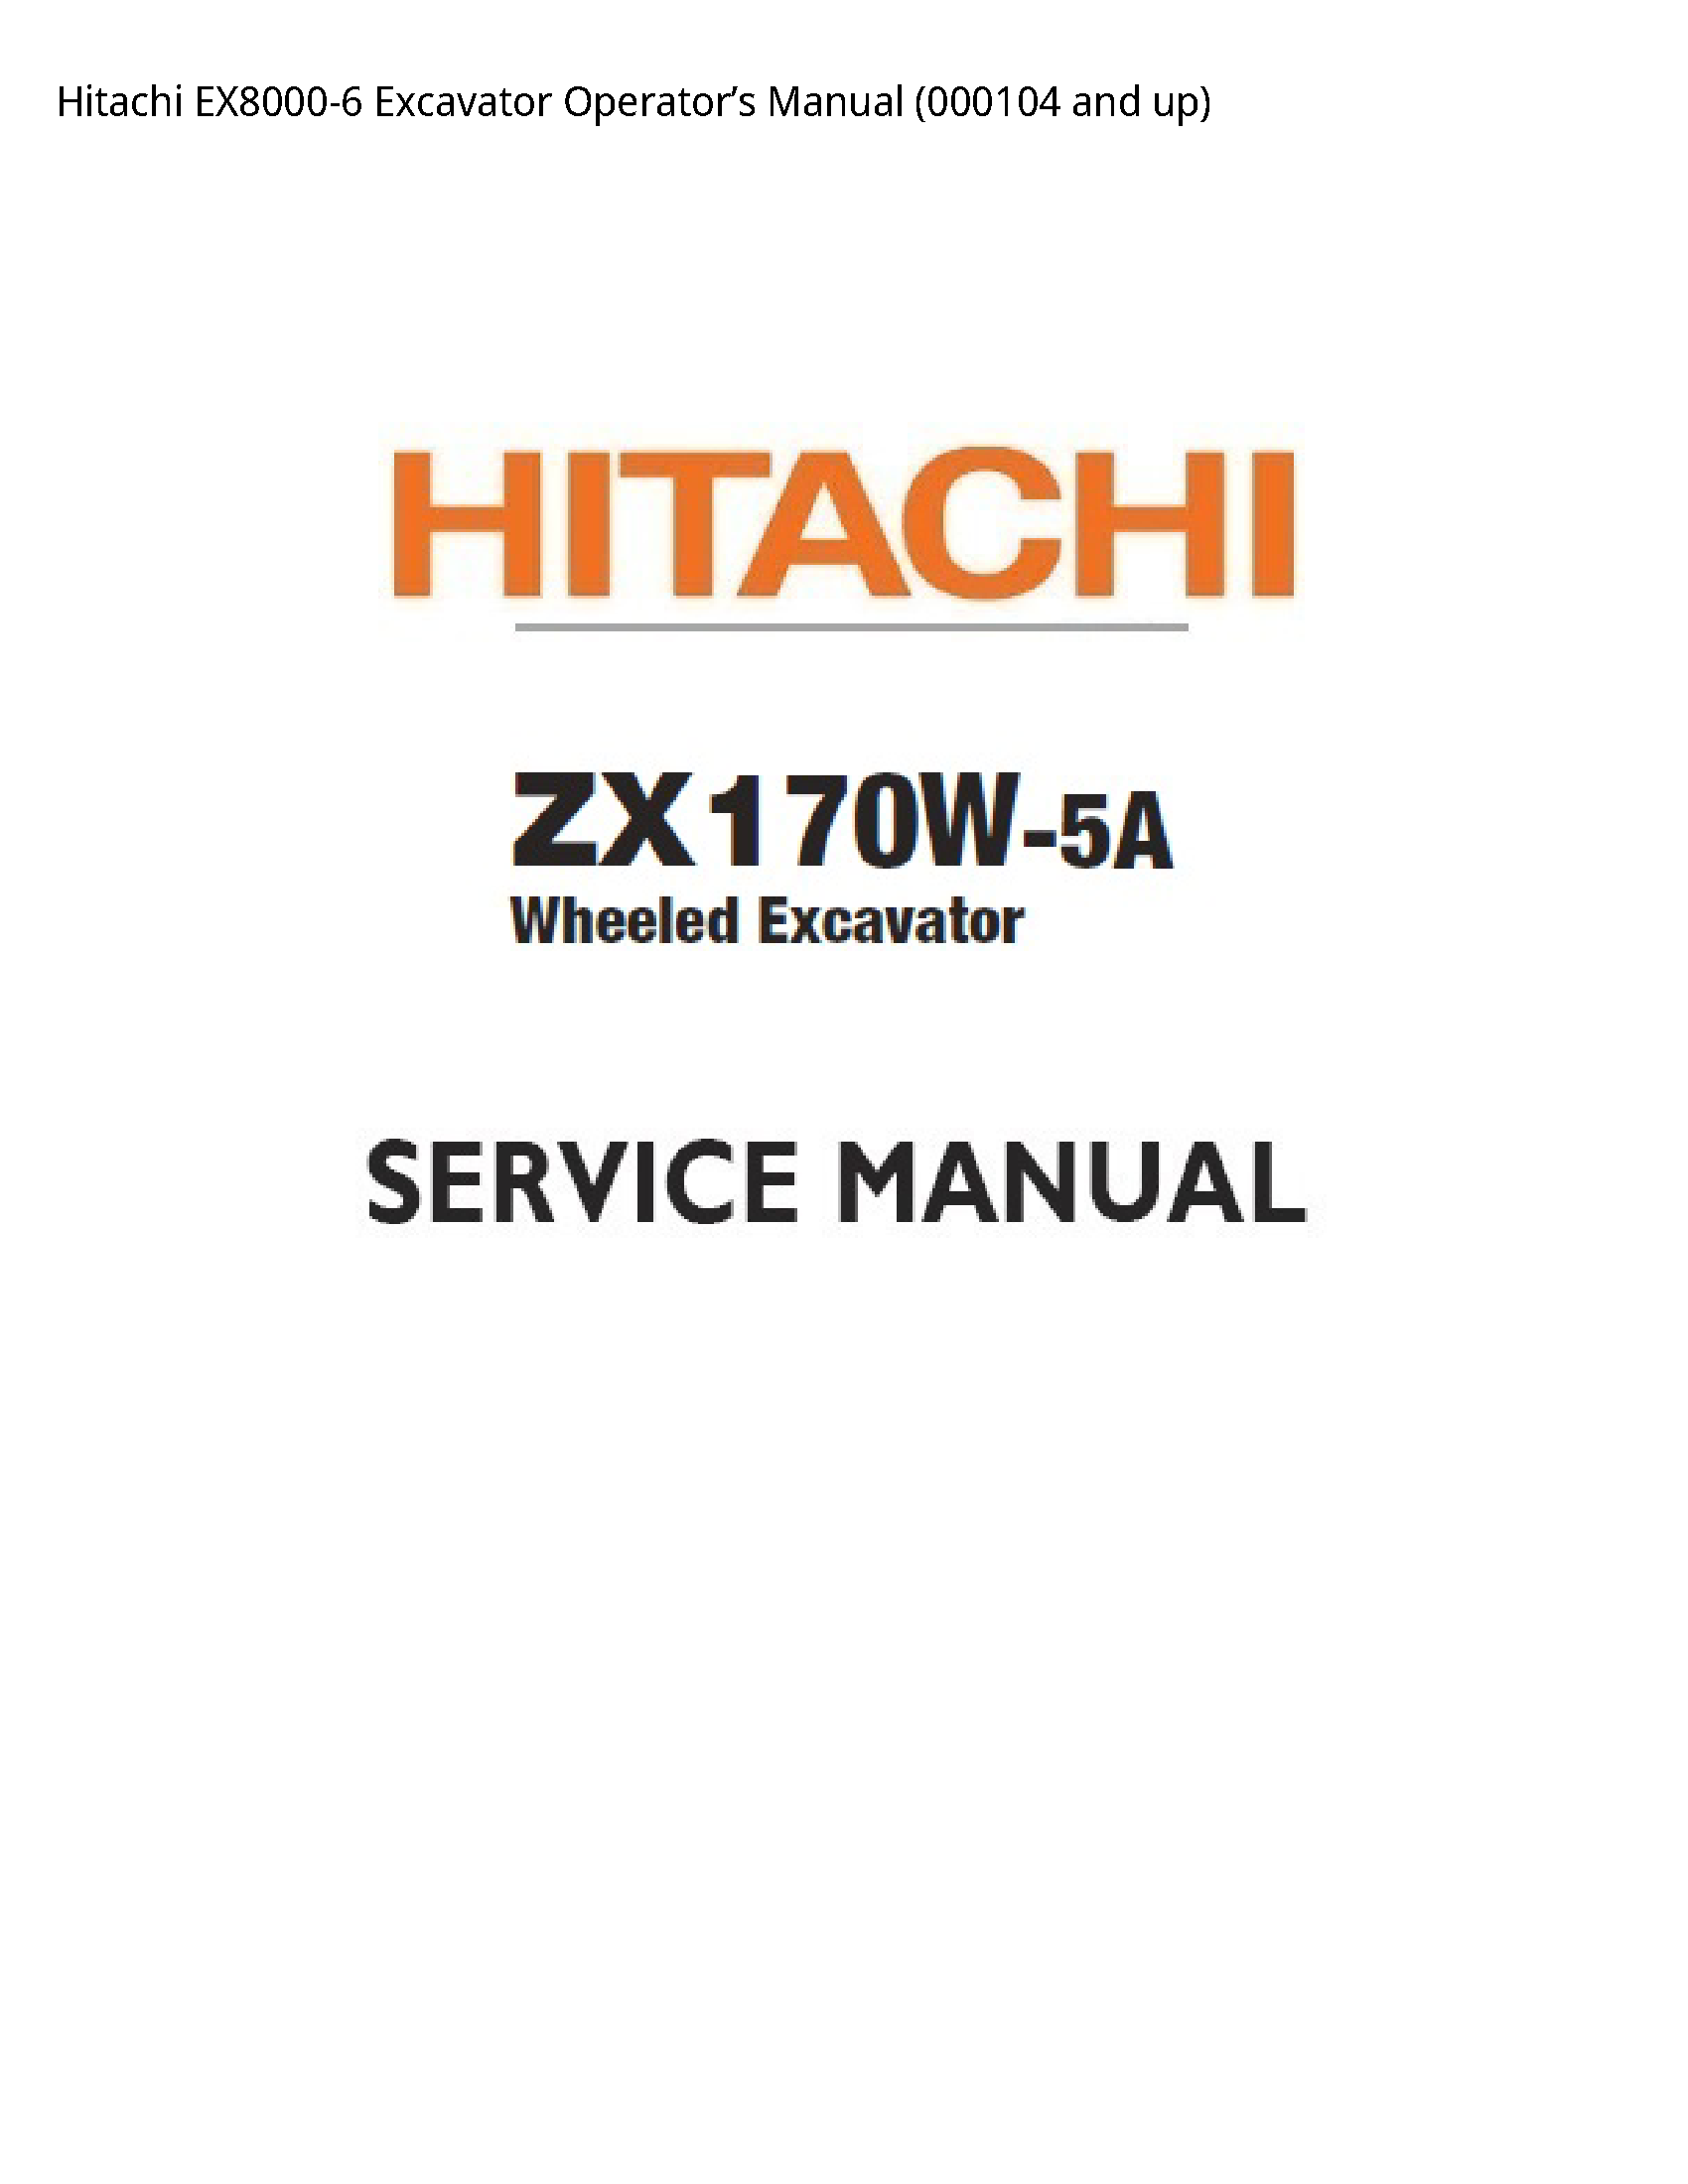 Hitachi EX8000-6 Excavator Operator’s manual